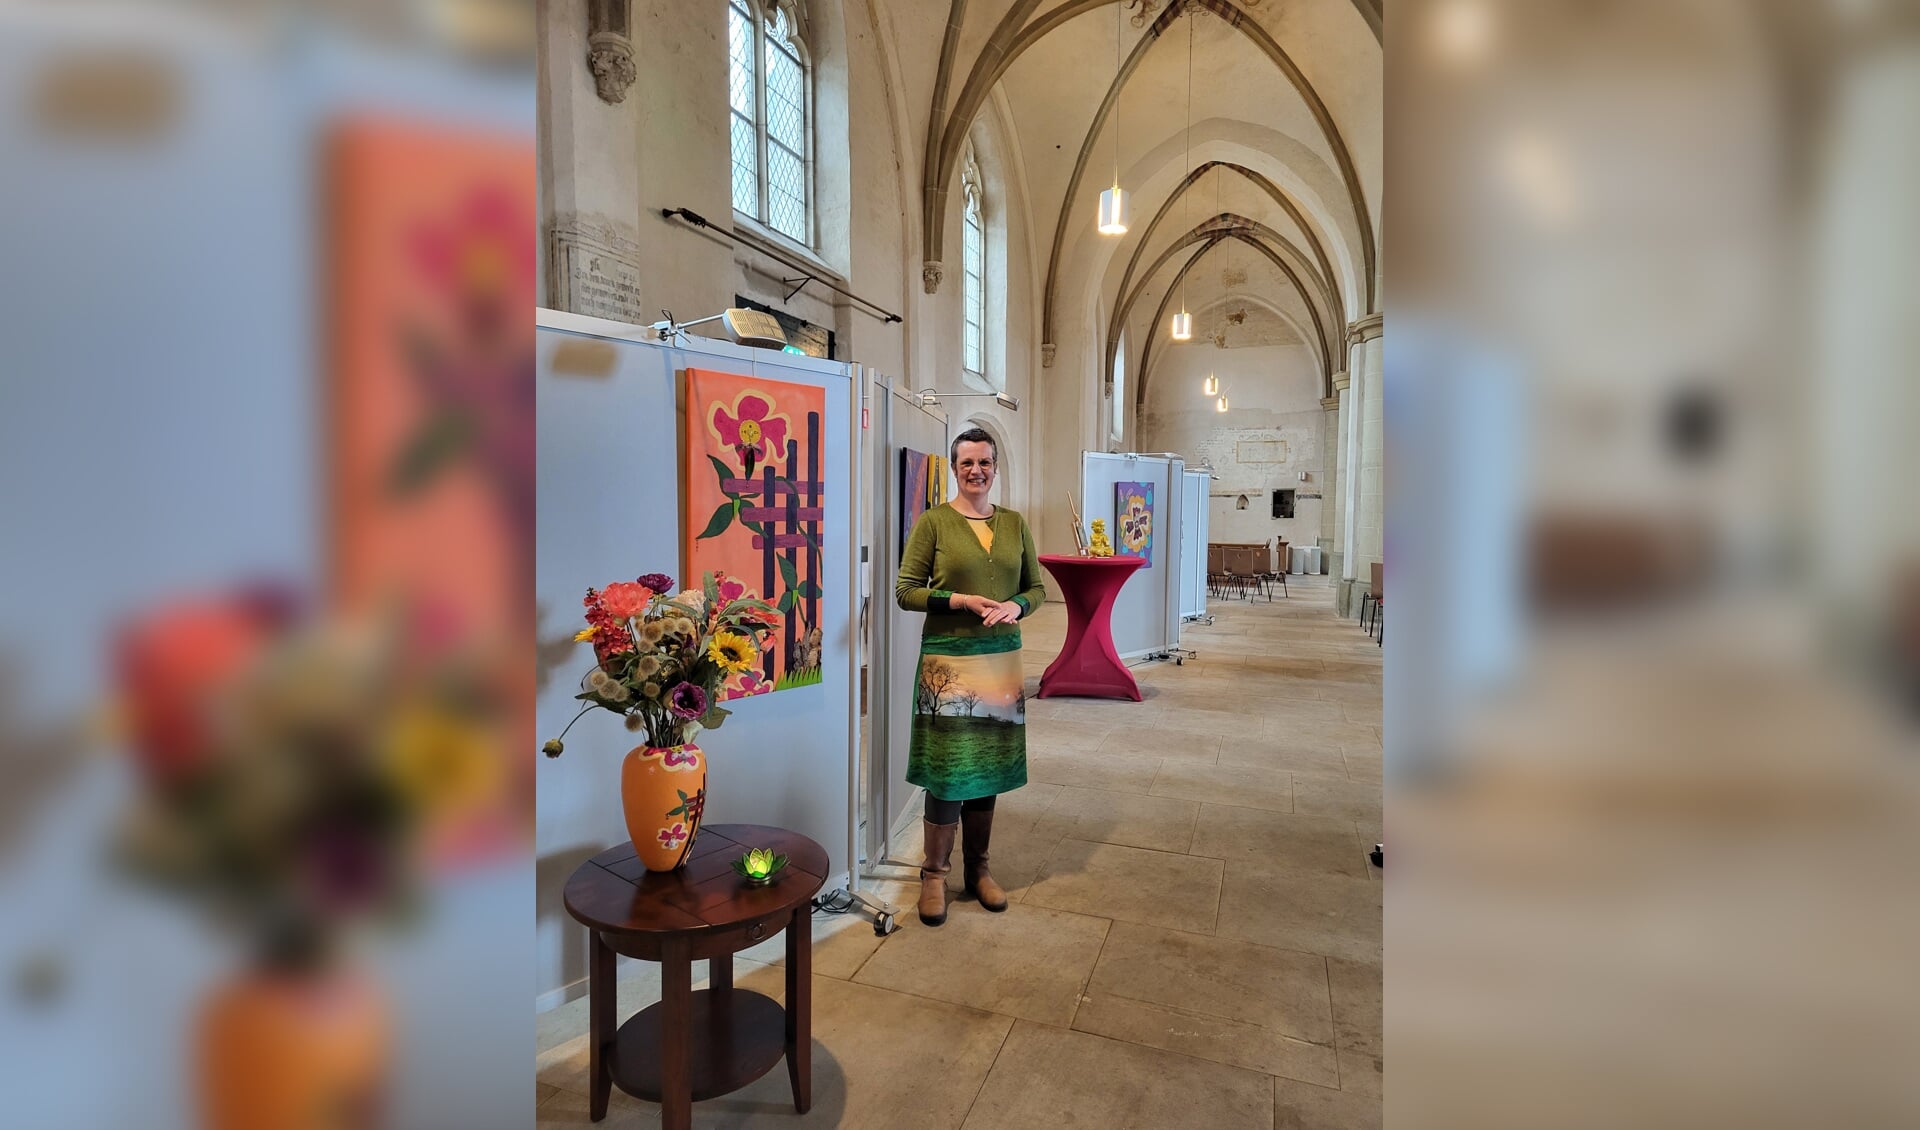 Seizoen Jacobskerk van start met werk van Ardie Sloetjes. Foto: Catharina de Fauw-Veenhuizen